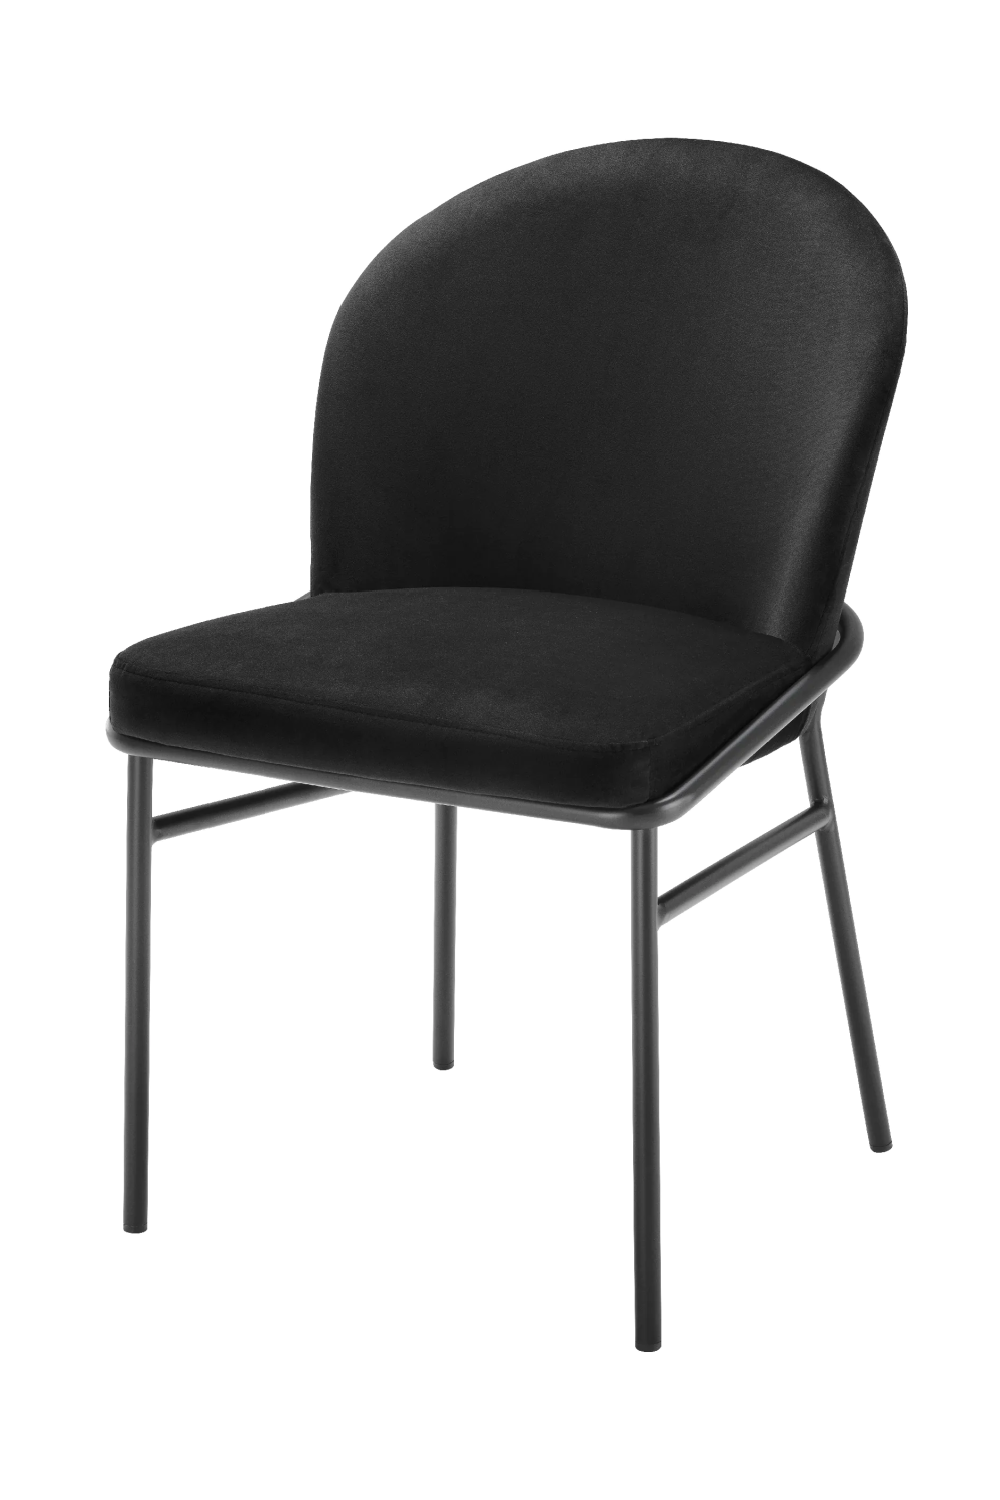 Velvet Dining Chair Set (2) | Eichholtz Willis | Oroa.com